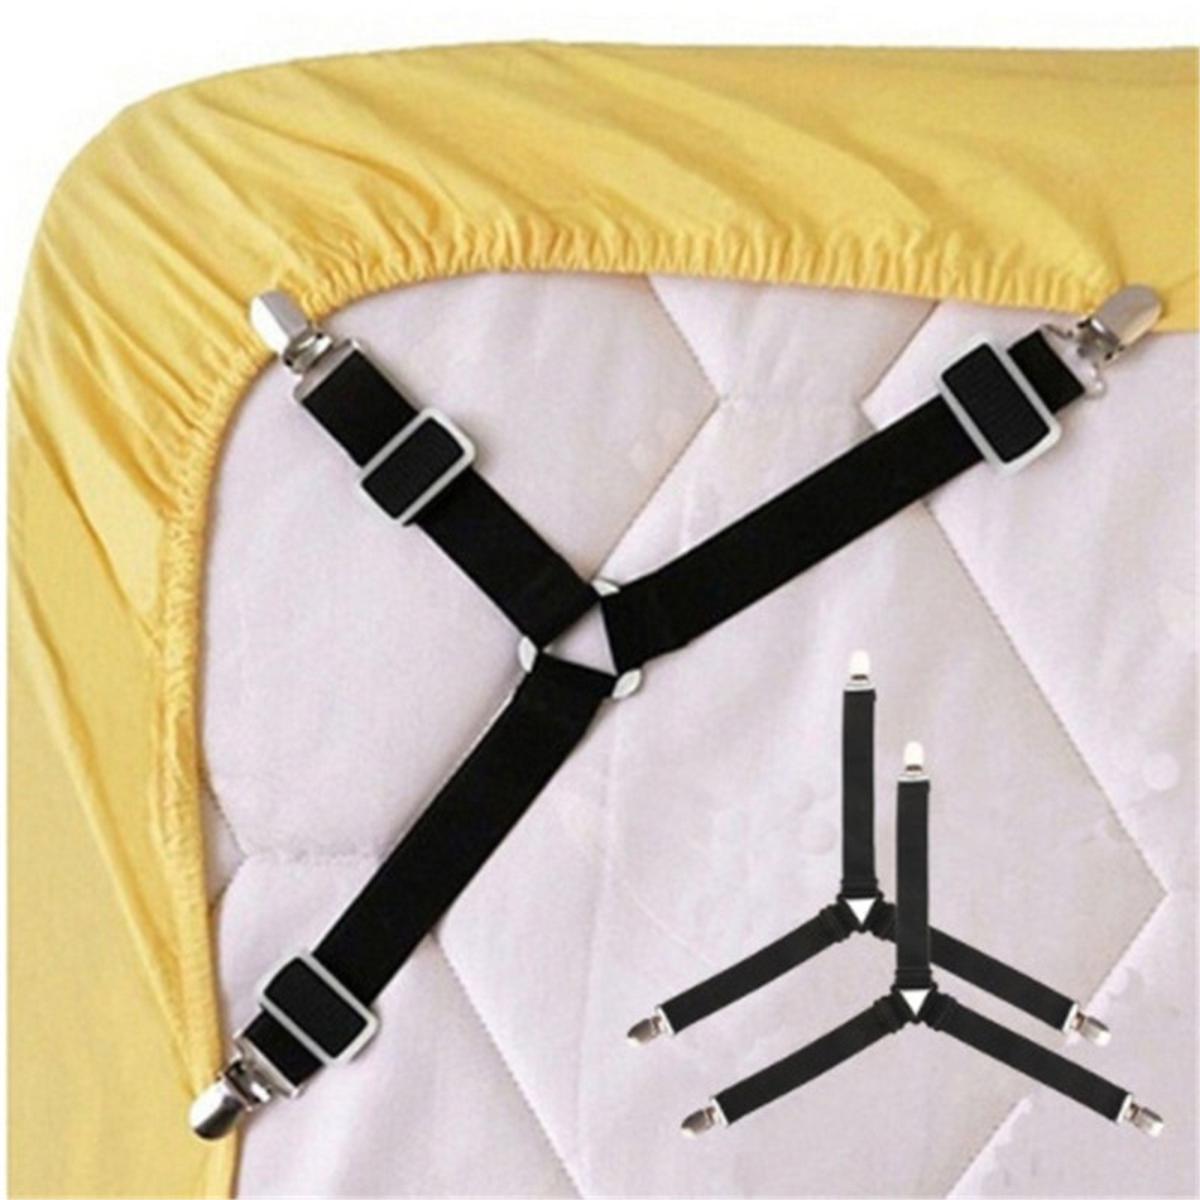 Elastic Bed Sheet Grippers Belt Fastener Bed Sheet Clips Mattress